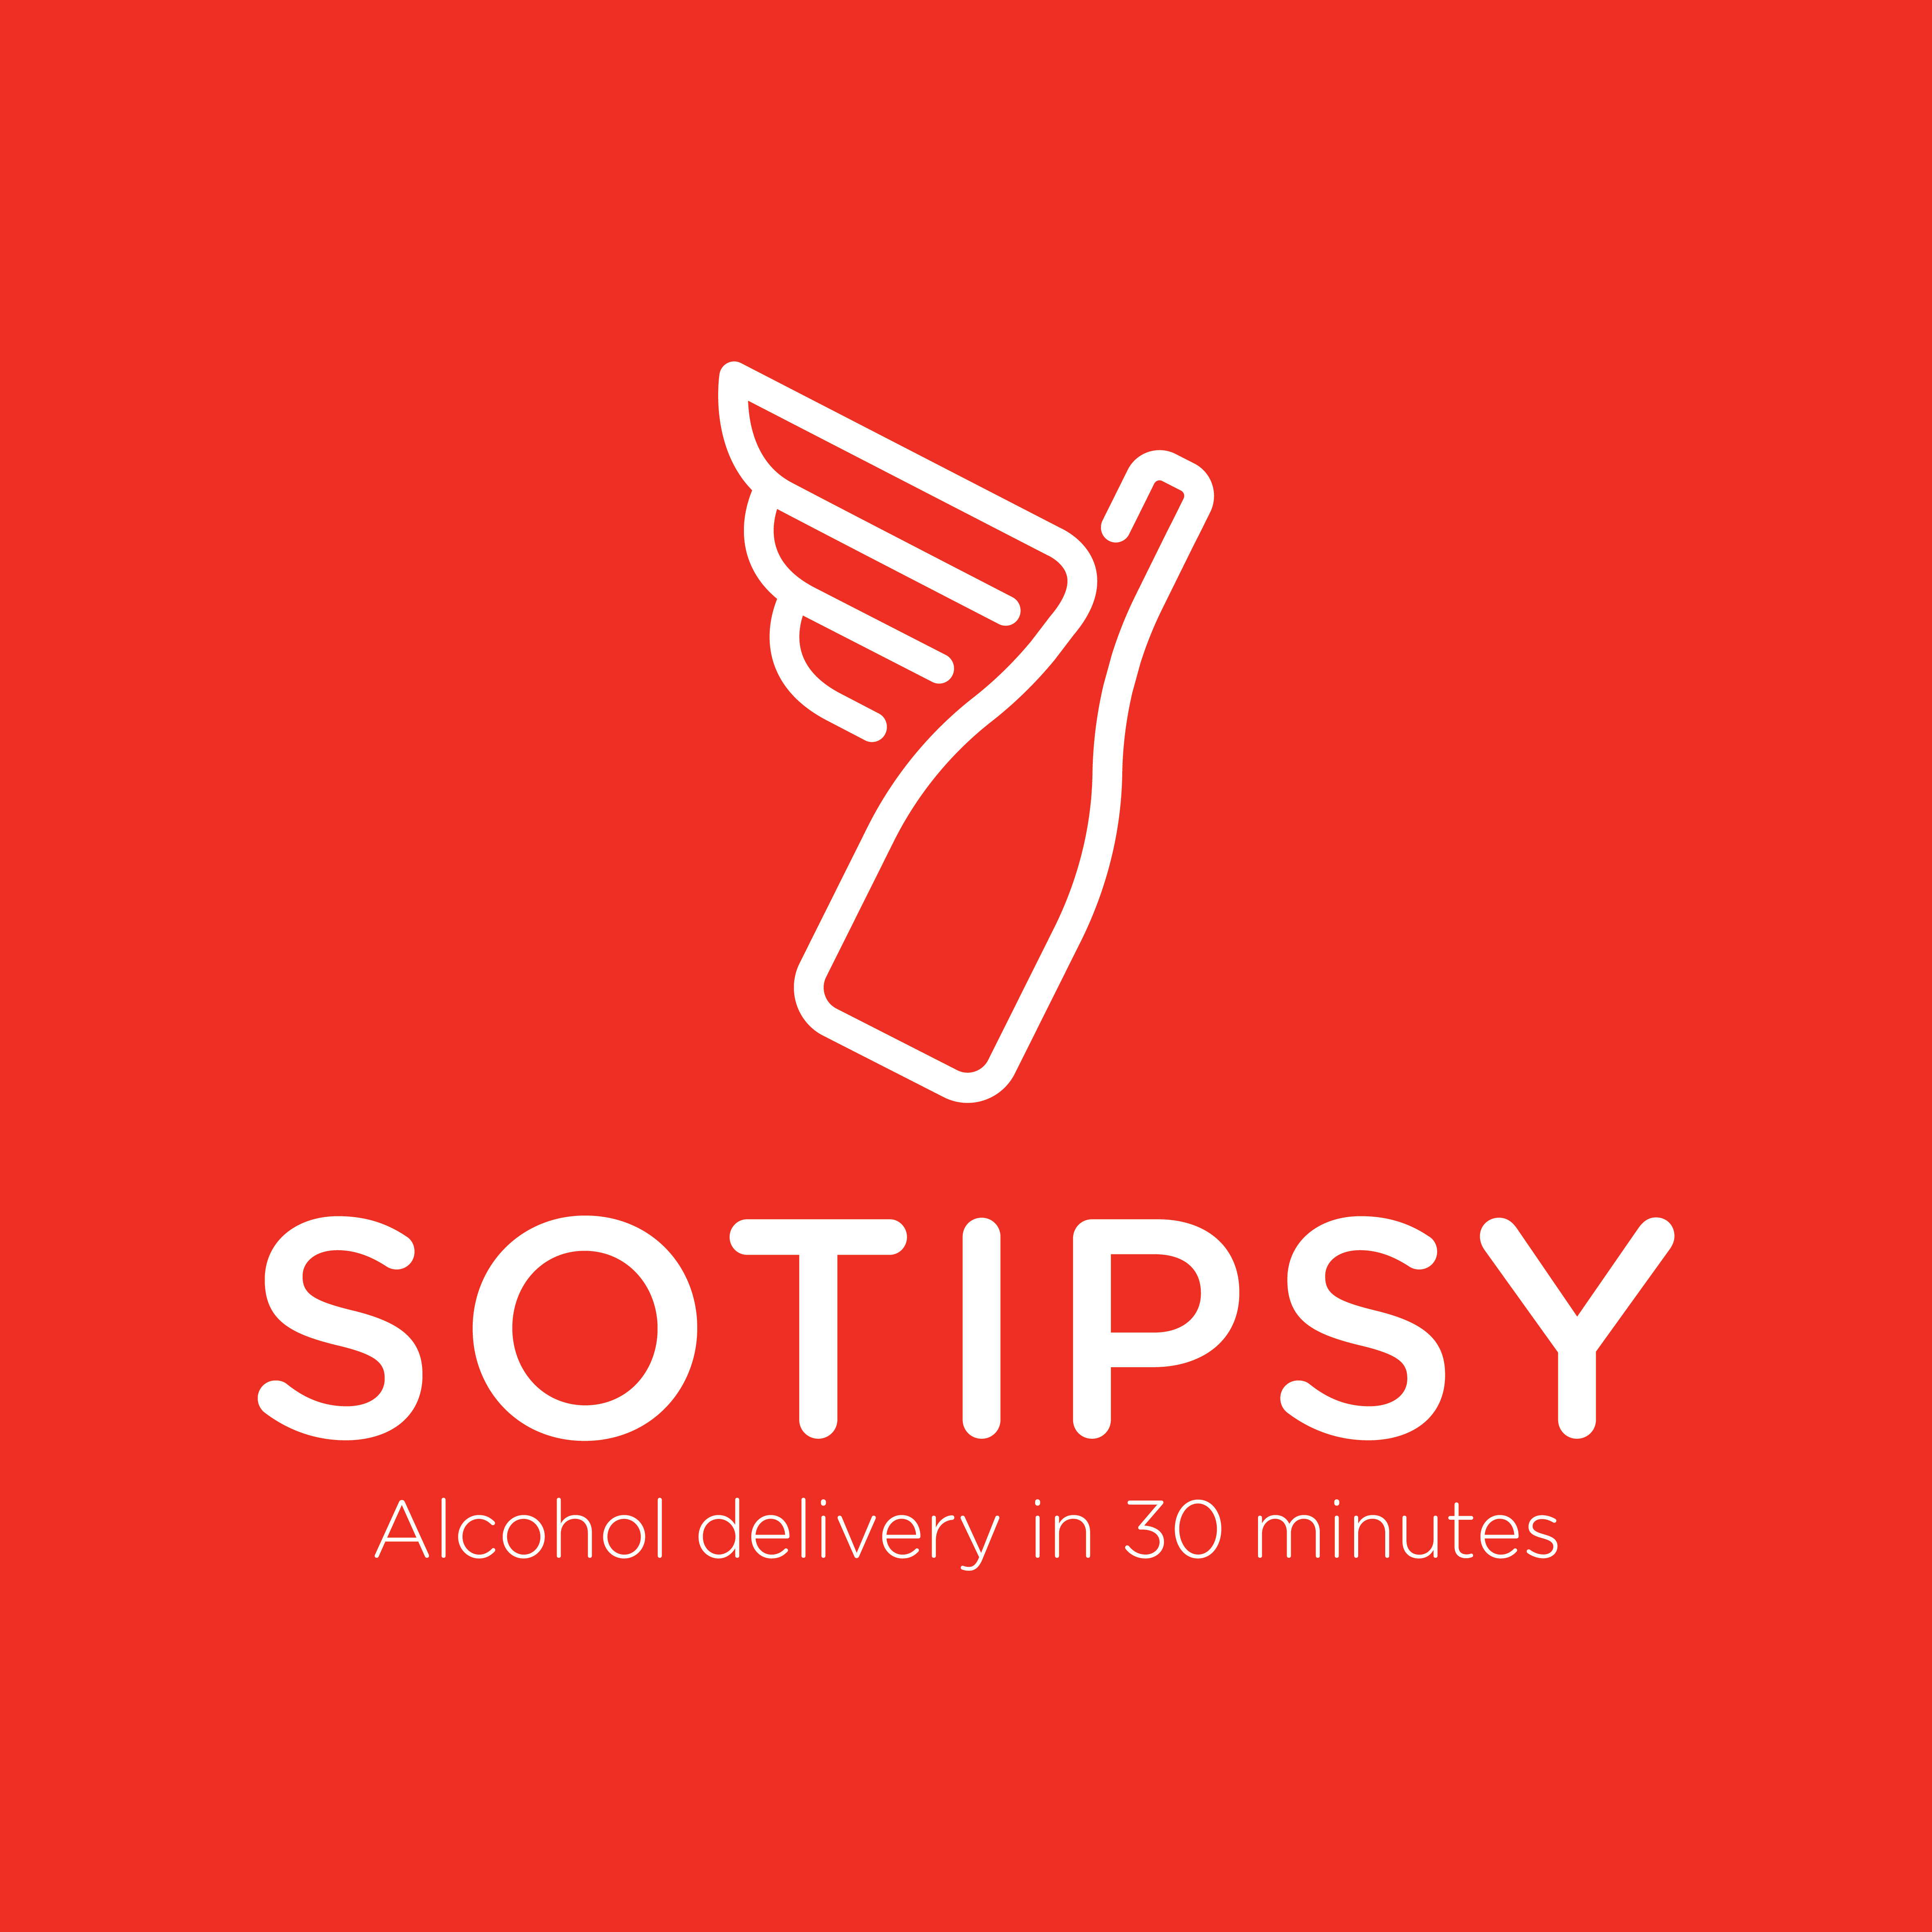 Sotipsy Not A Franchise